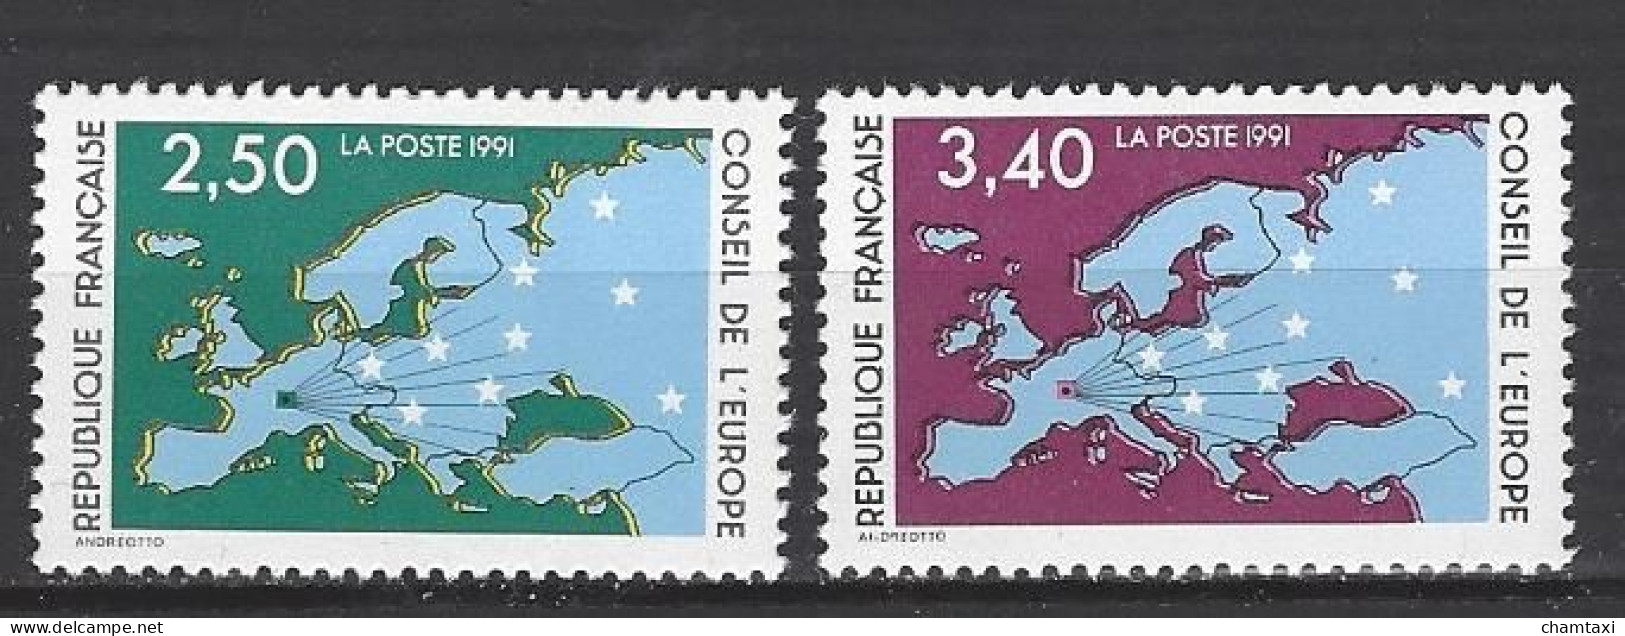 CONSEIL DE L EUROPE 1991 TIMBRE SERVICE 106 107 CARTE D EUROPE ET ETOILES - Ungebraucht